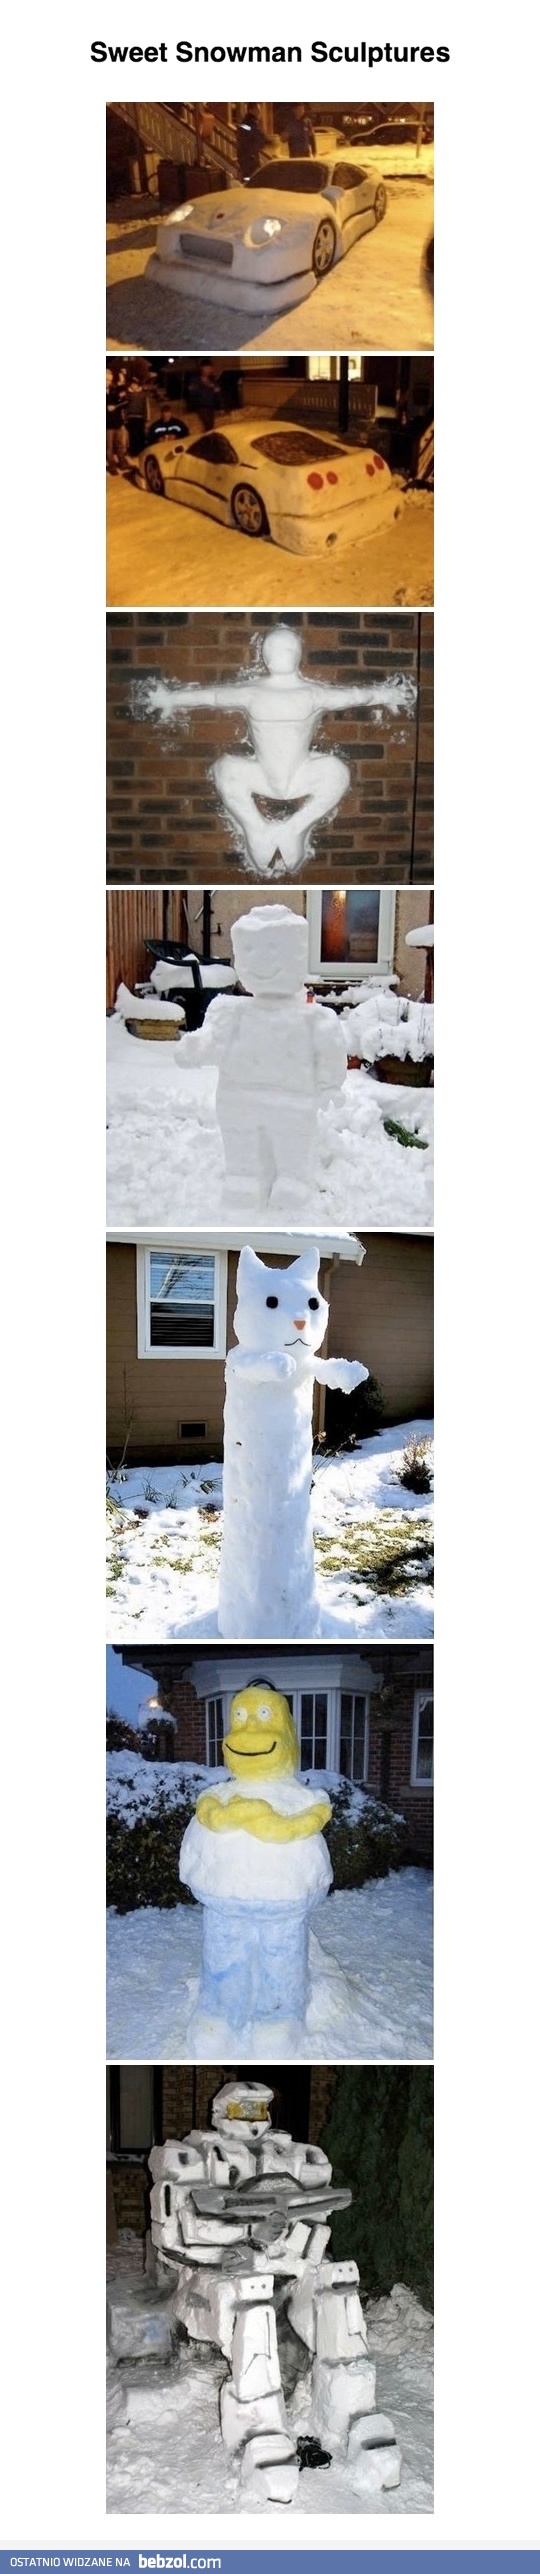 Pomysłowe rzeźby ze śniegu